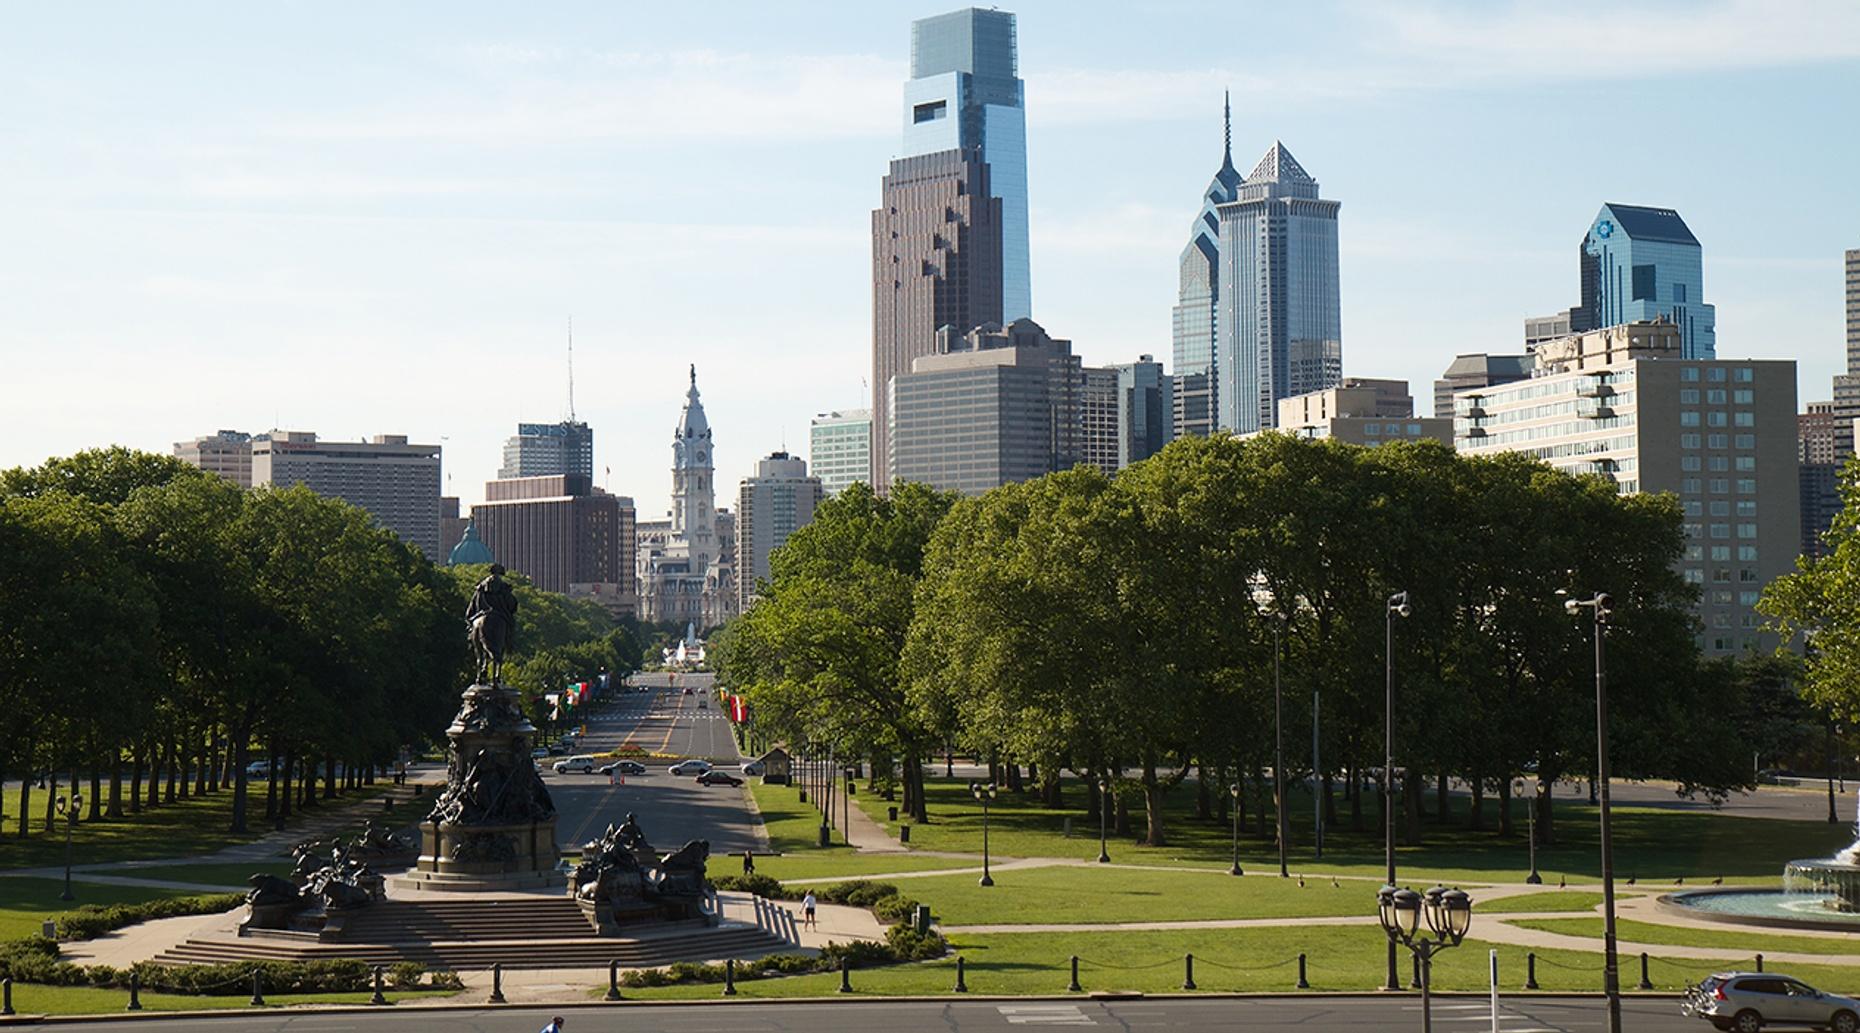 Guided Historical Walking Tour of Philadelphia